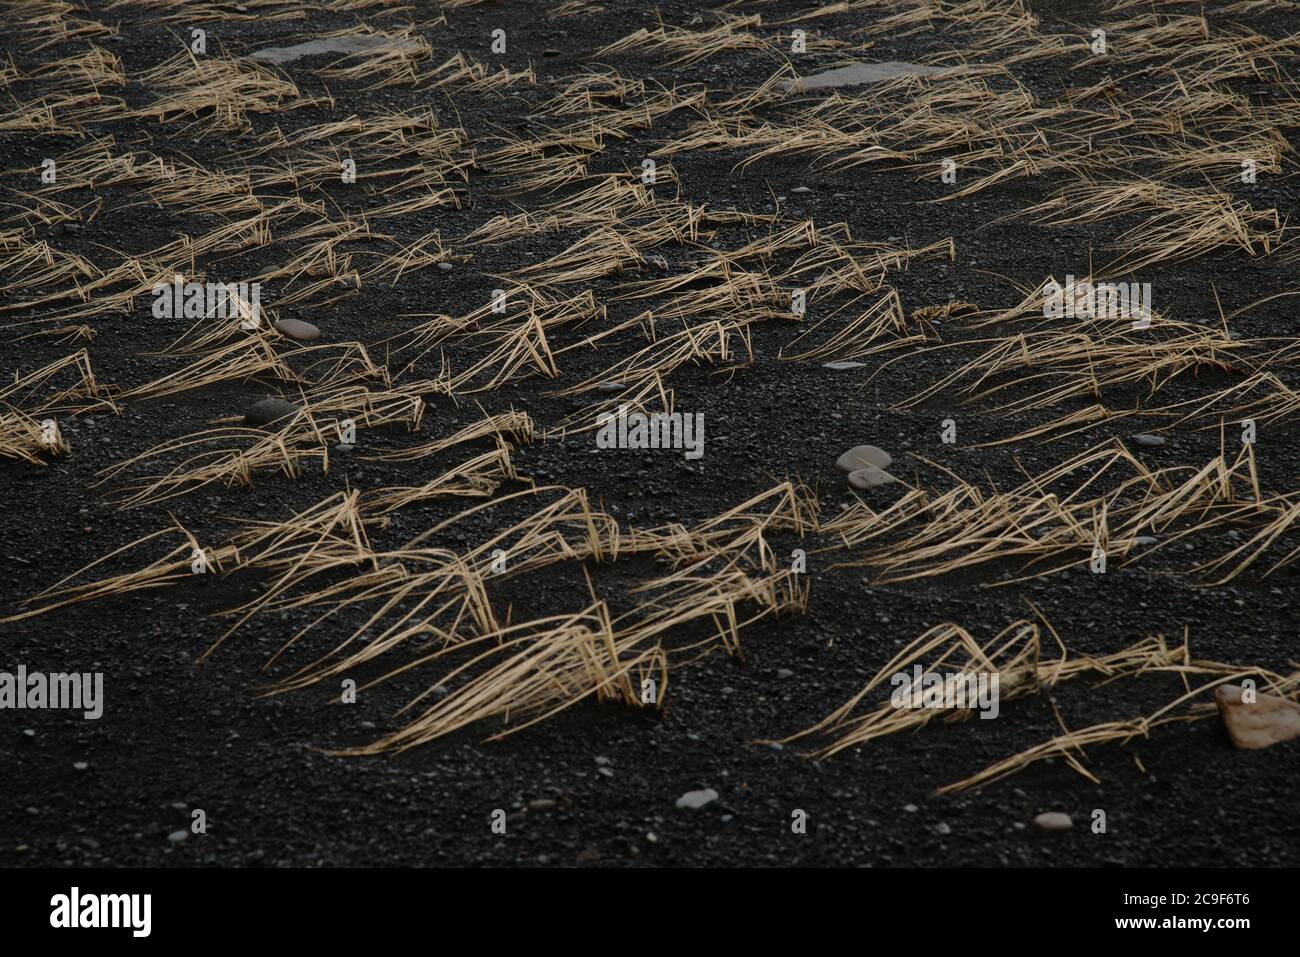 Immagine astratta dell'erba gialla che cresce in ciuffi su una spiaggia di sabbia nera. Alcune pietre più grandi sono visibili nella sabbia. Foto Stock